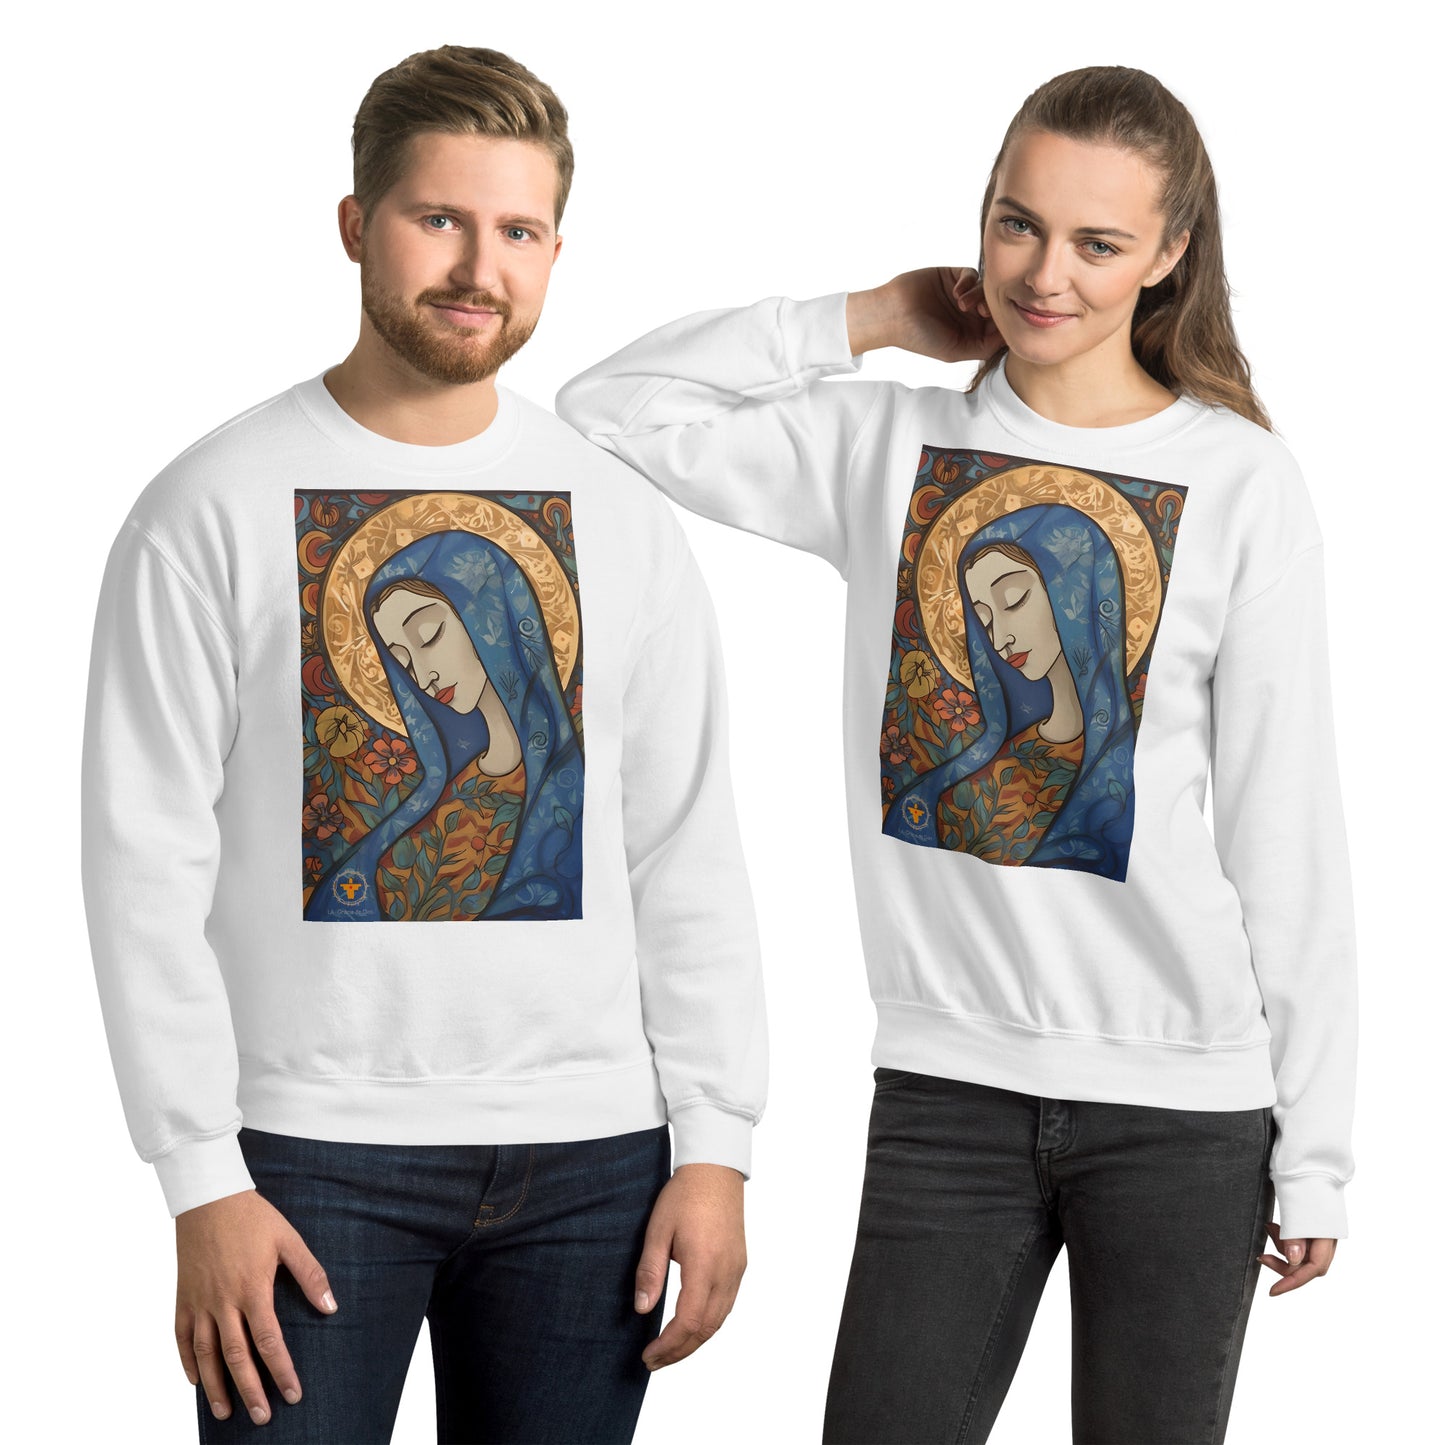 pareja alegre con sudadera blanca lleva imagen de la virgen Maria